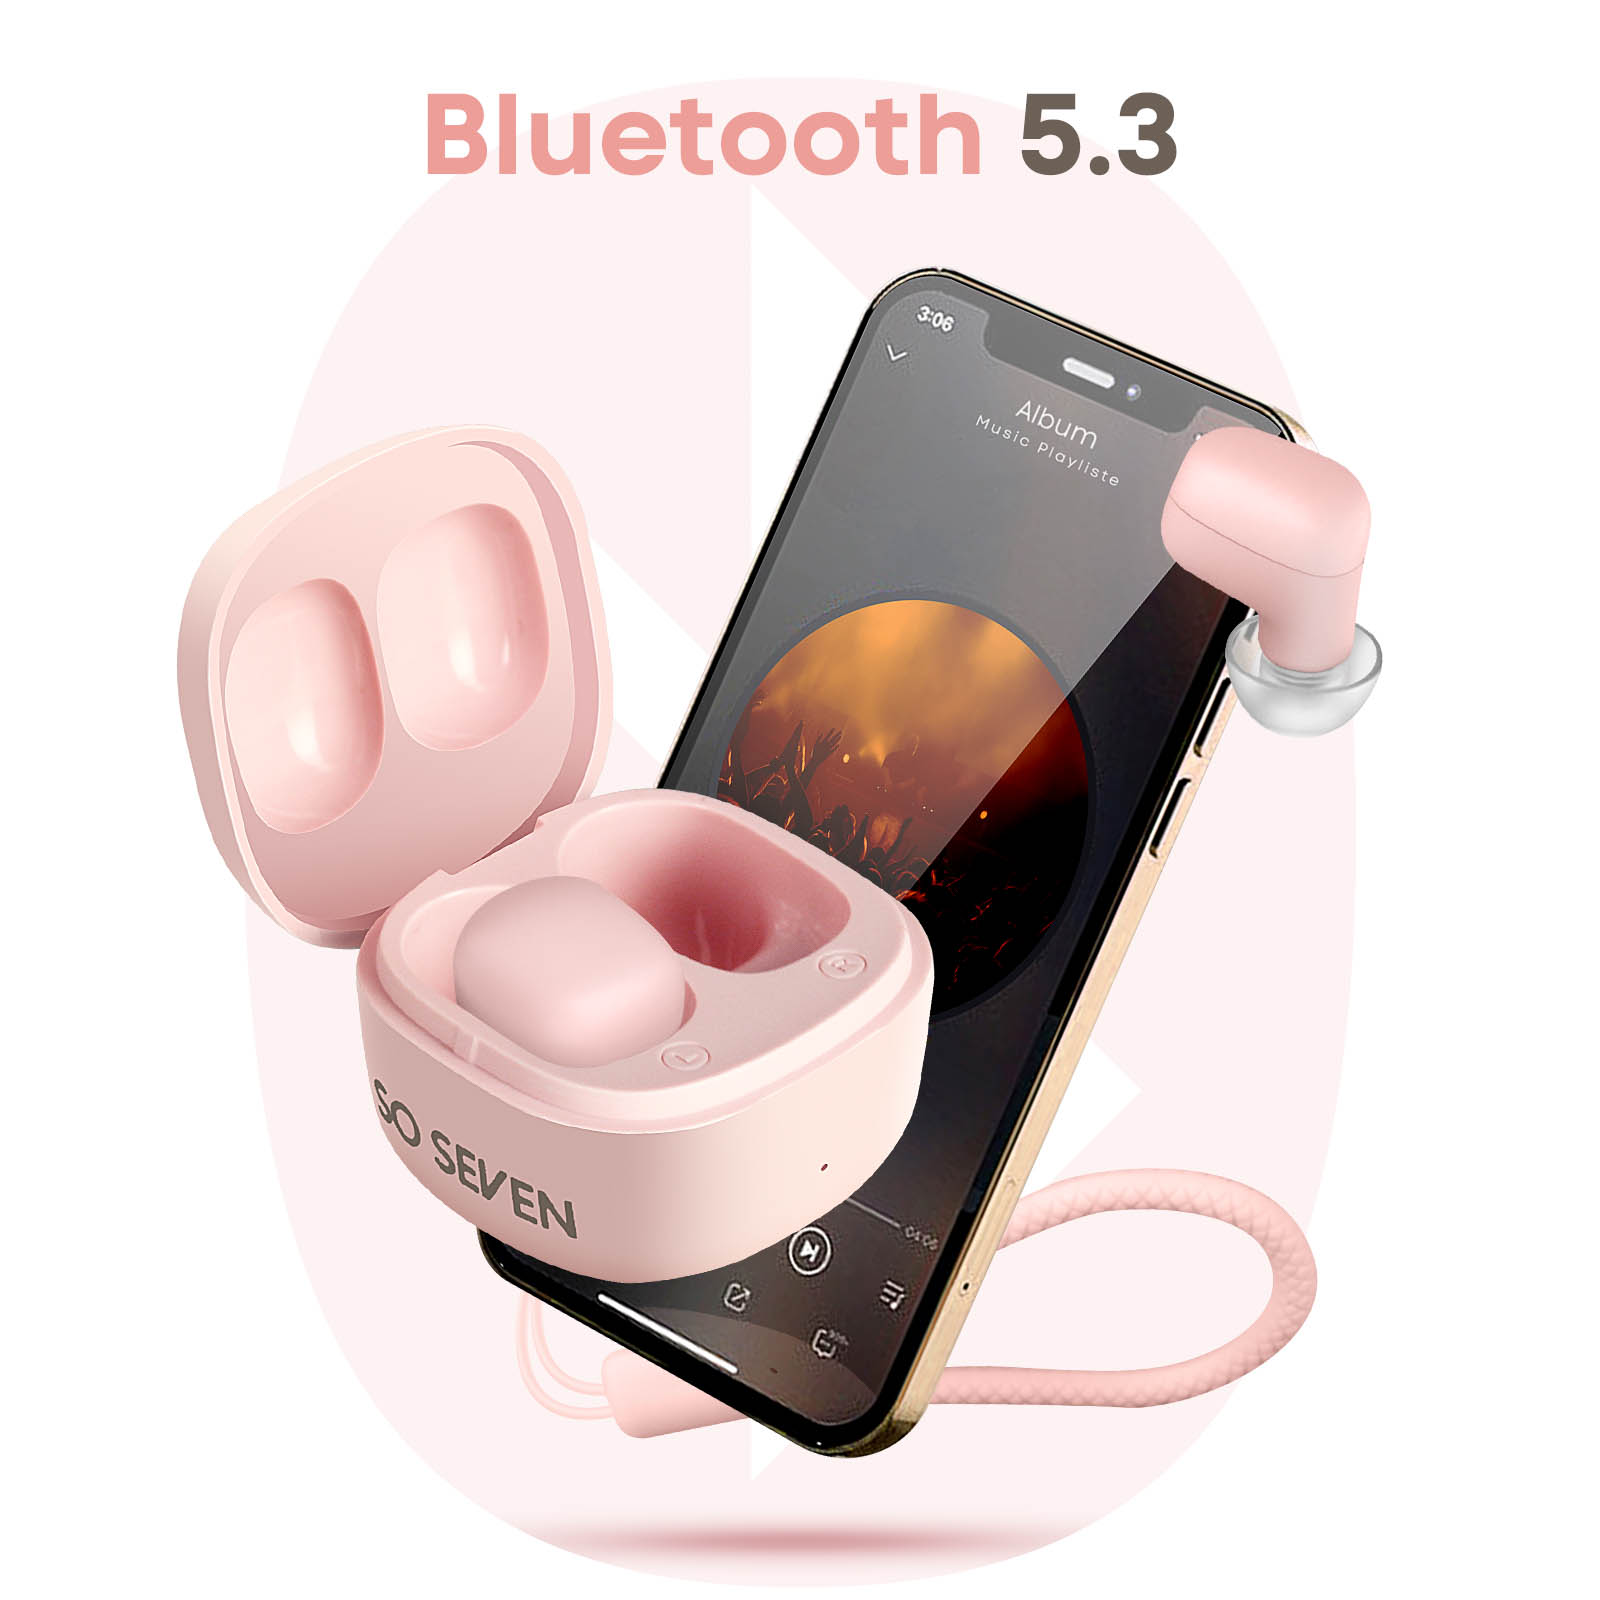 SO SEVEN Bluetooth Bluetooth 20 Gesamthördauer Std. 5.3, Kopfhörer